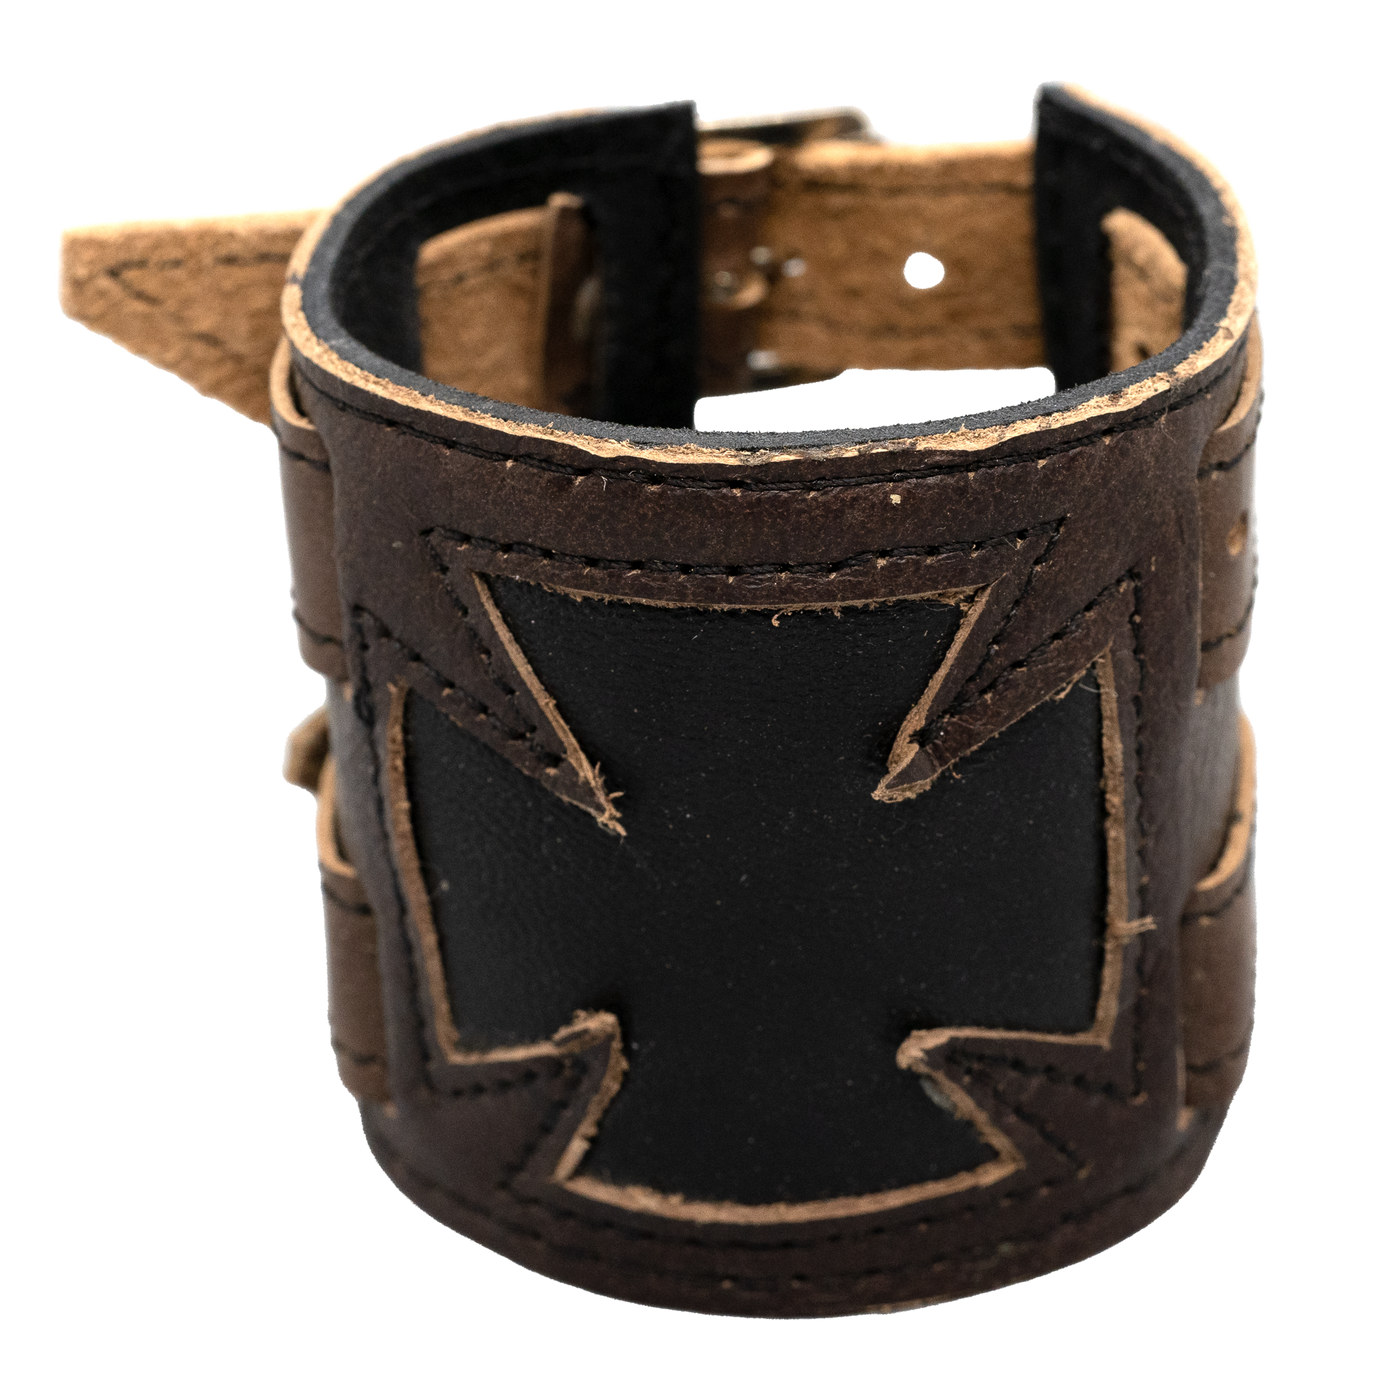 Iron Cross Leather wristband/cuff